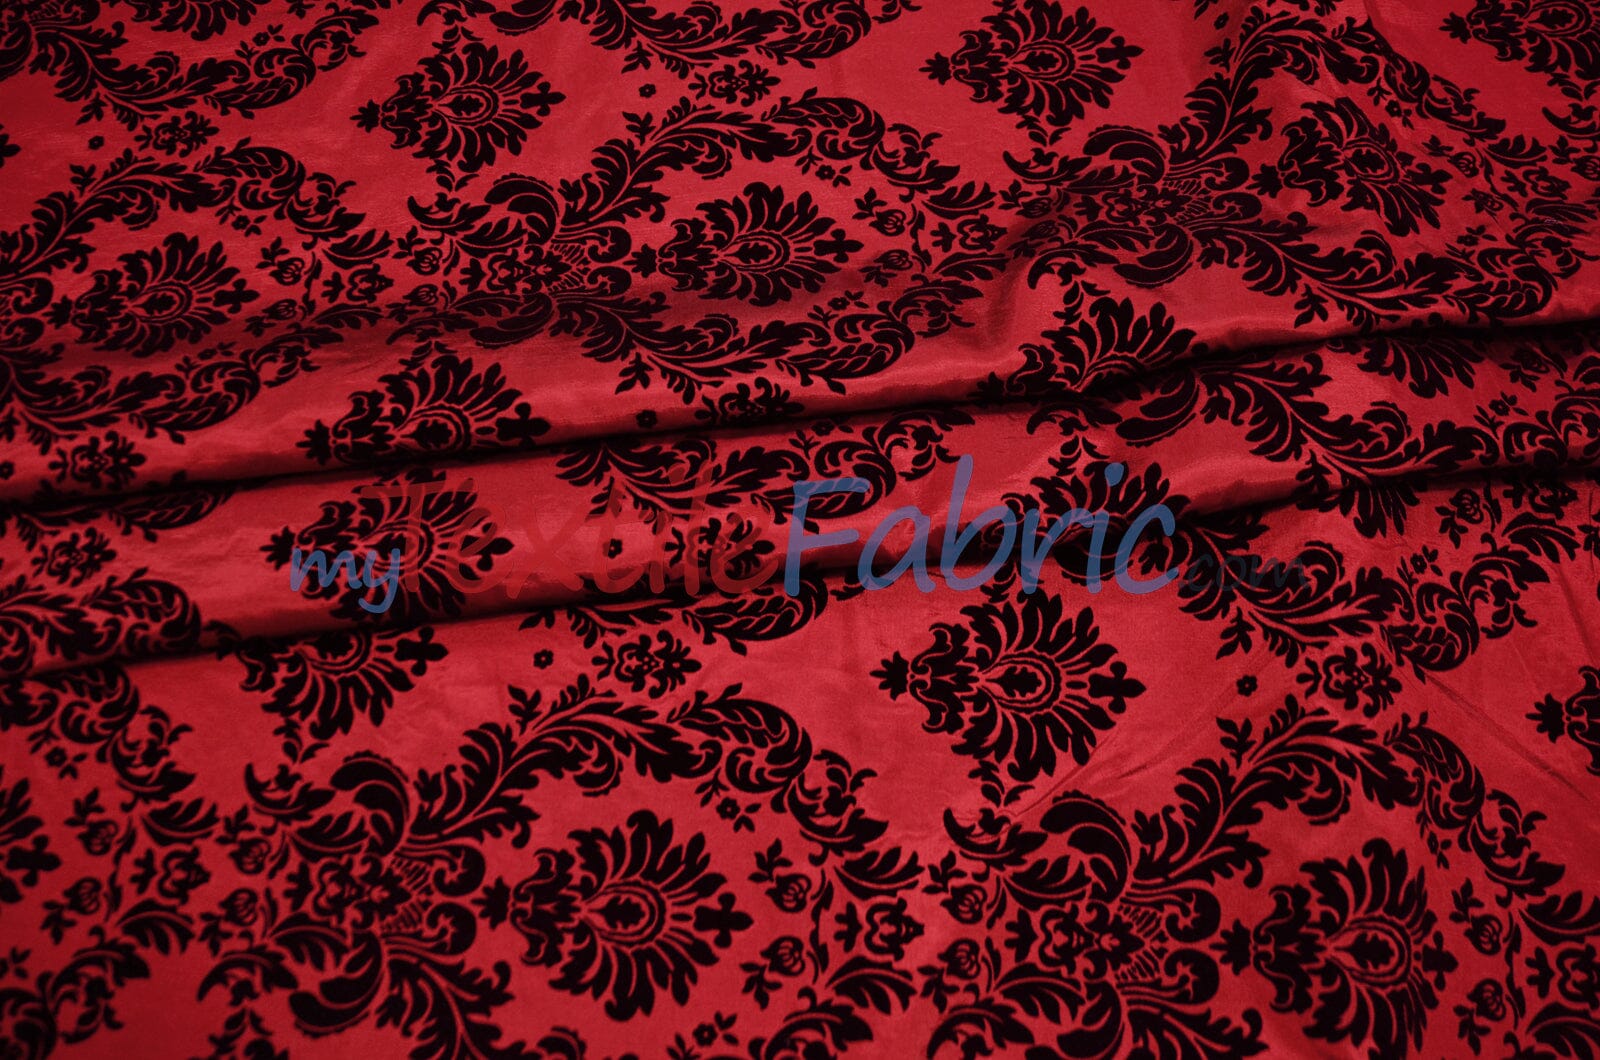 Red Crushed Flocked Velvet Fabric